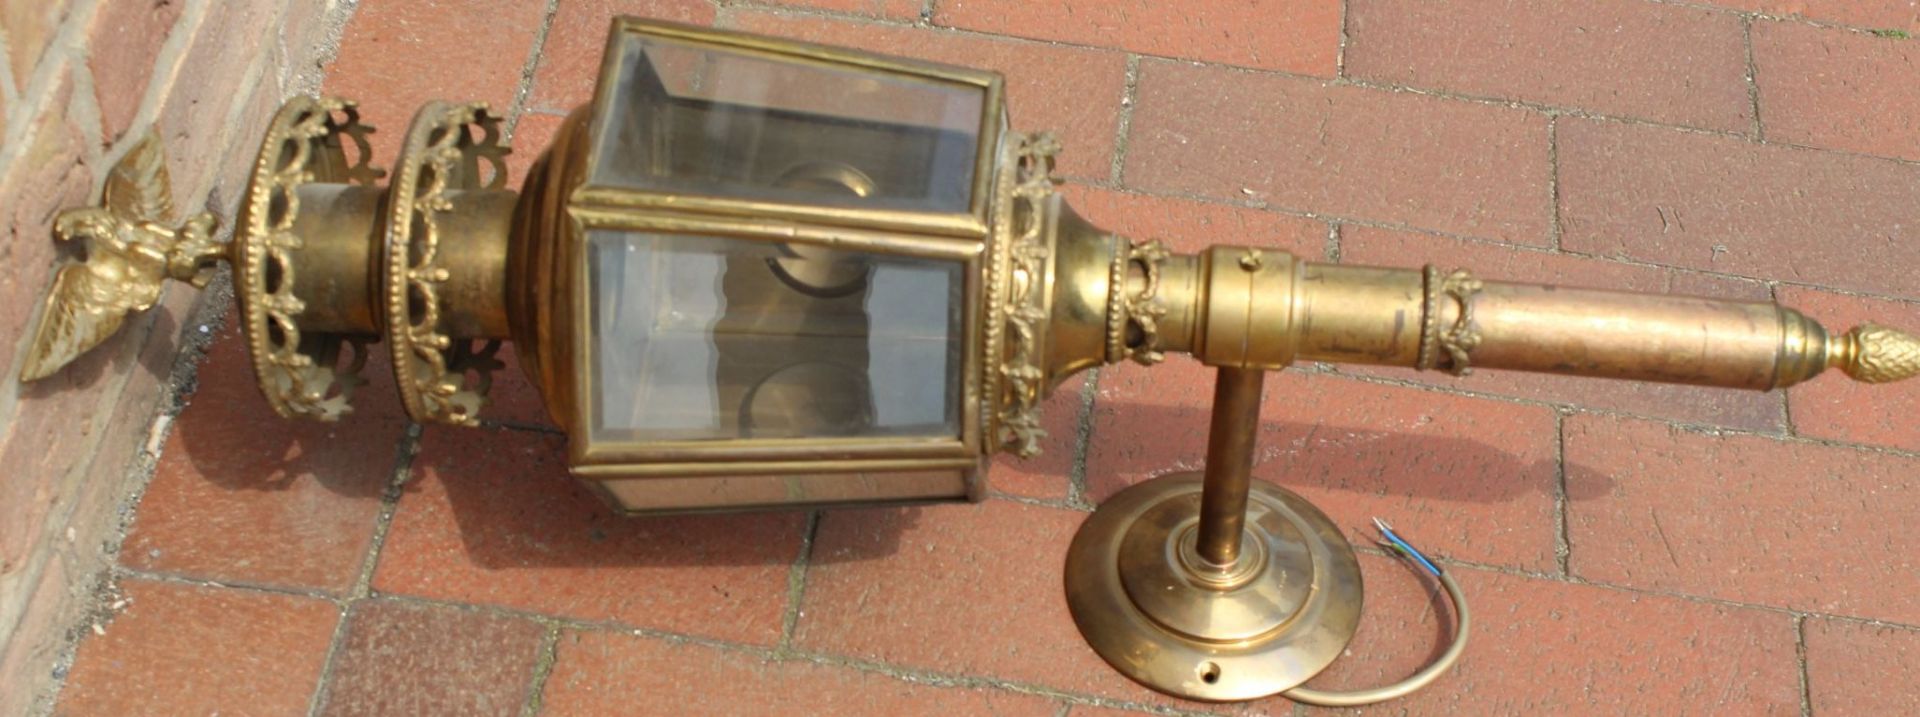 grosse, massive Kutschenlampe, Messing/Bronze, H-75 cm, B-28 cm, elektrisch, guter Zustand - Bild 6 aus 9